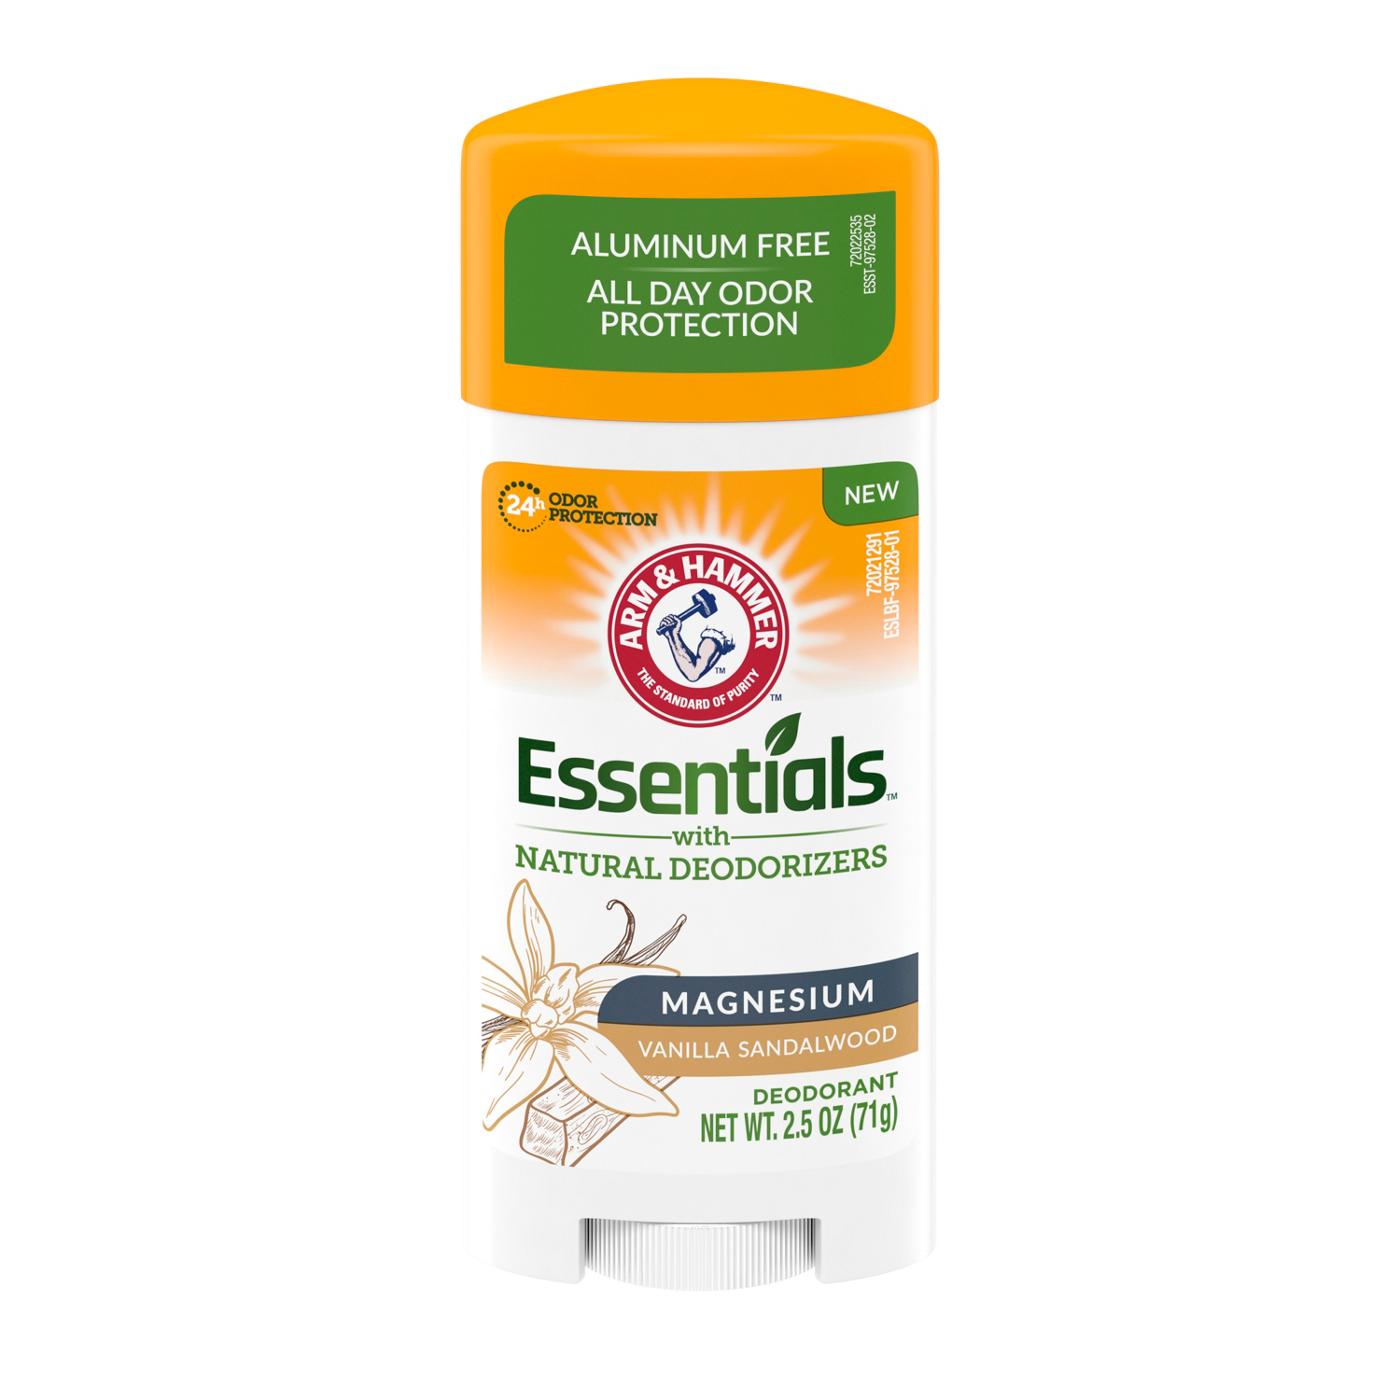 Arm & Hammer Essentials Magnesium Deodorant Vanilla Sandalwood; image 1 of 4